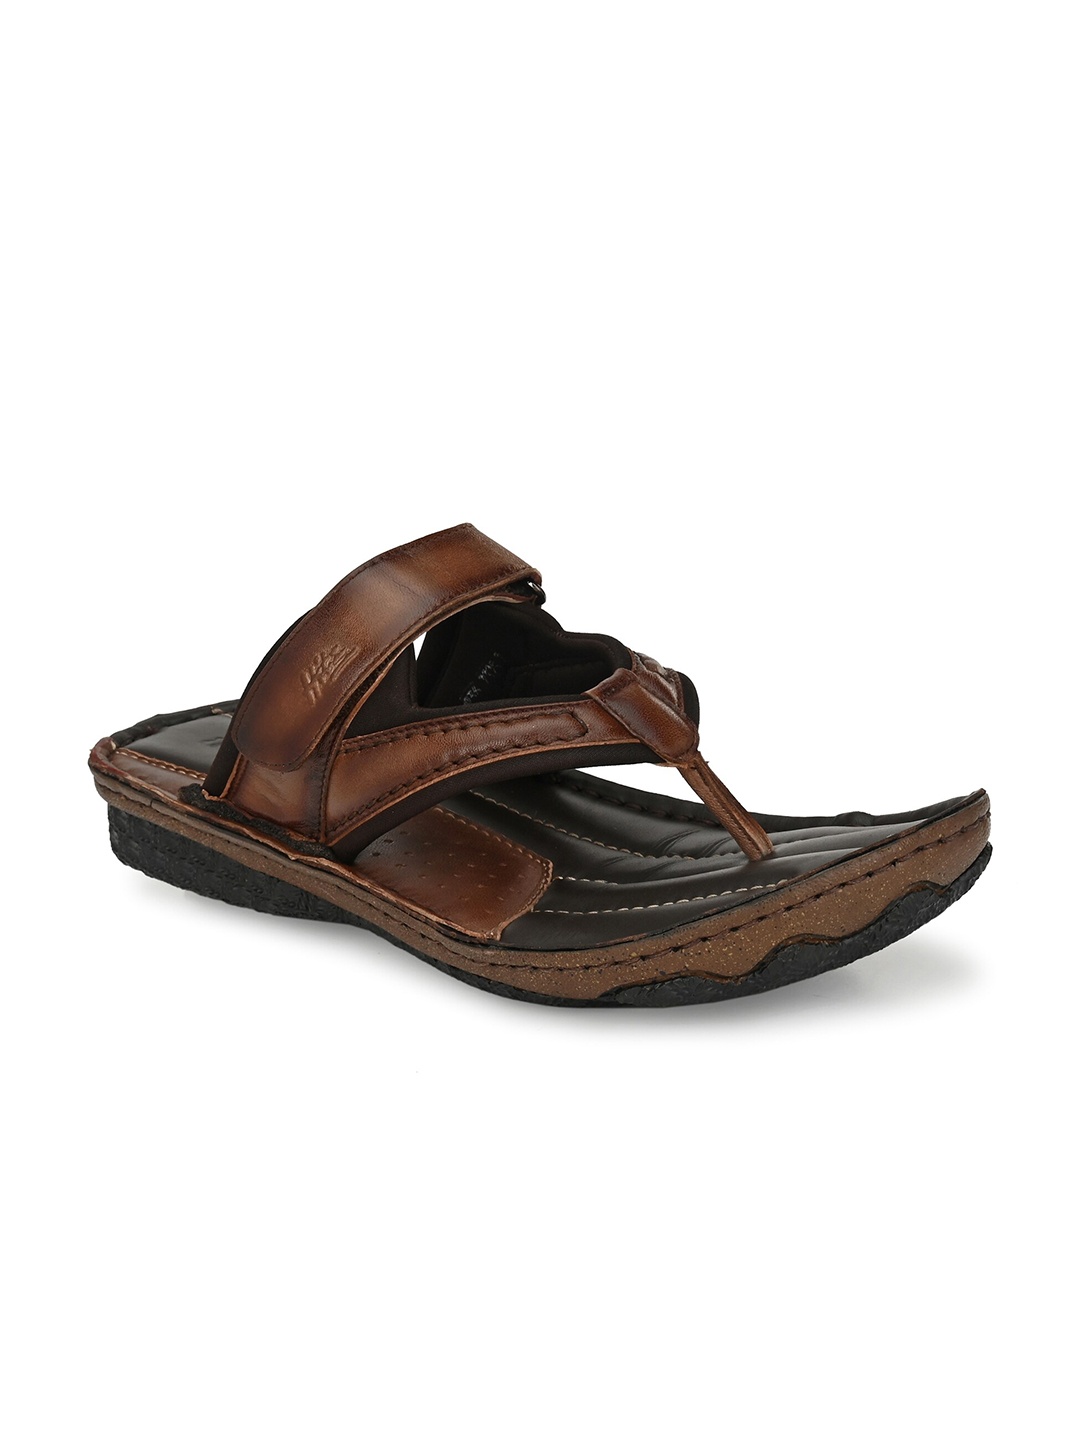 

Hitz Men Leather Comfort Sandals, Brown